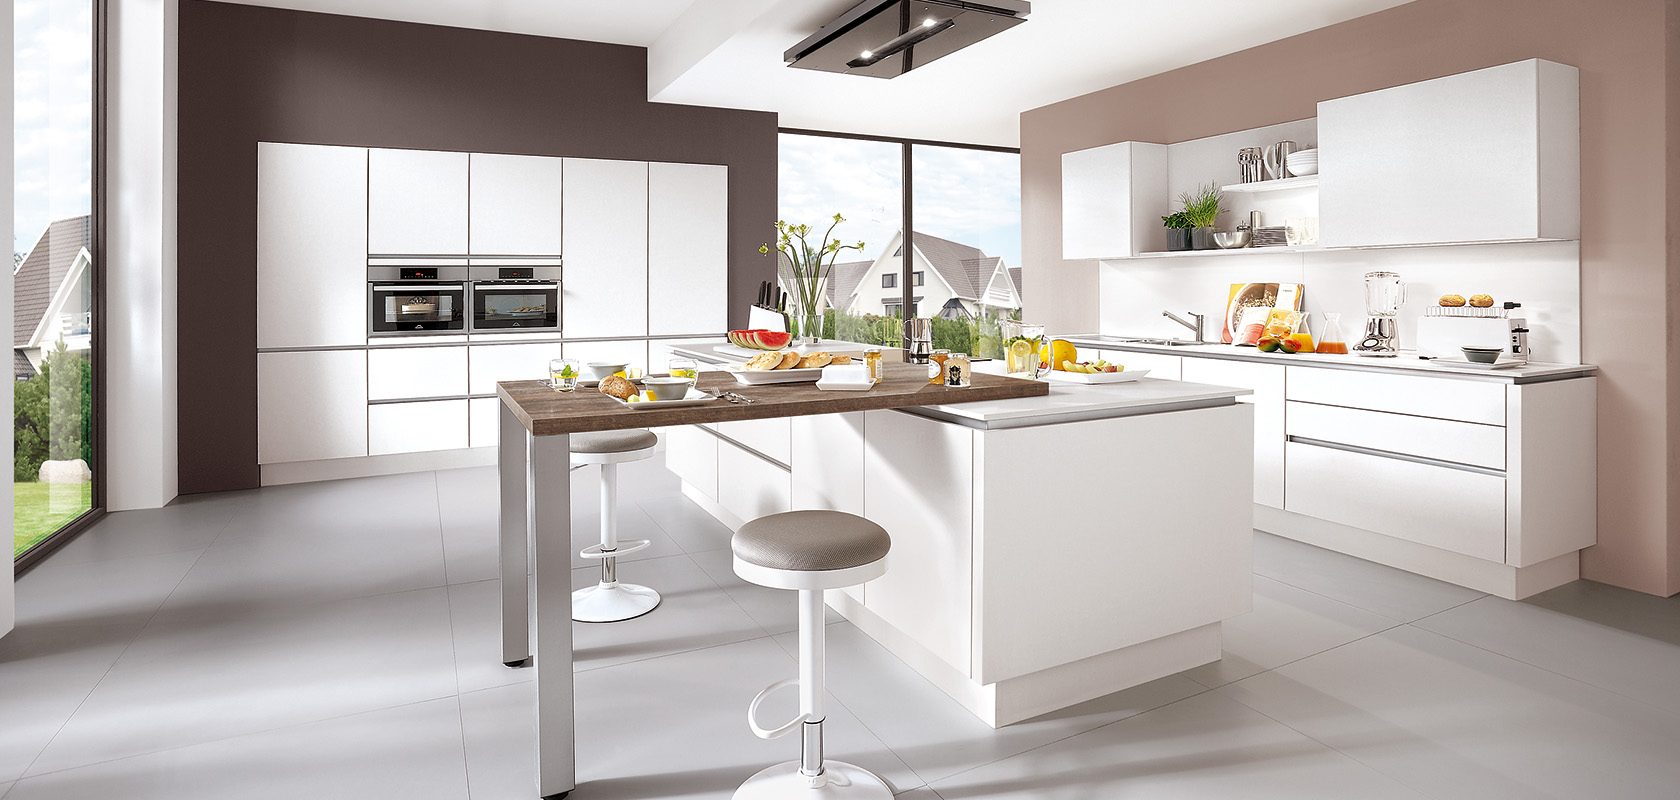 Moderne keukeninterieur met schone witte werkbladen, strakke inbouwapparatuur en een ontbijtbar tegen een achtergrond van grote ramen met een voorstedelijk uitzicht.